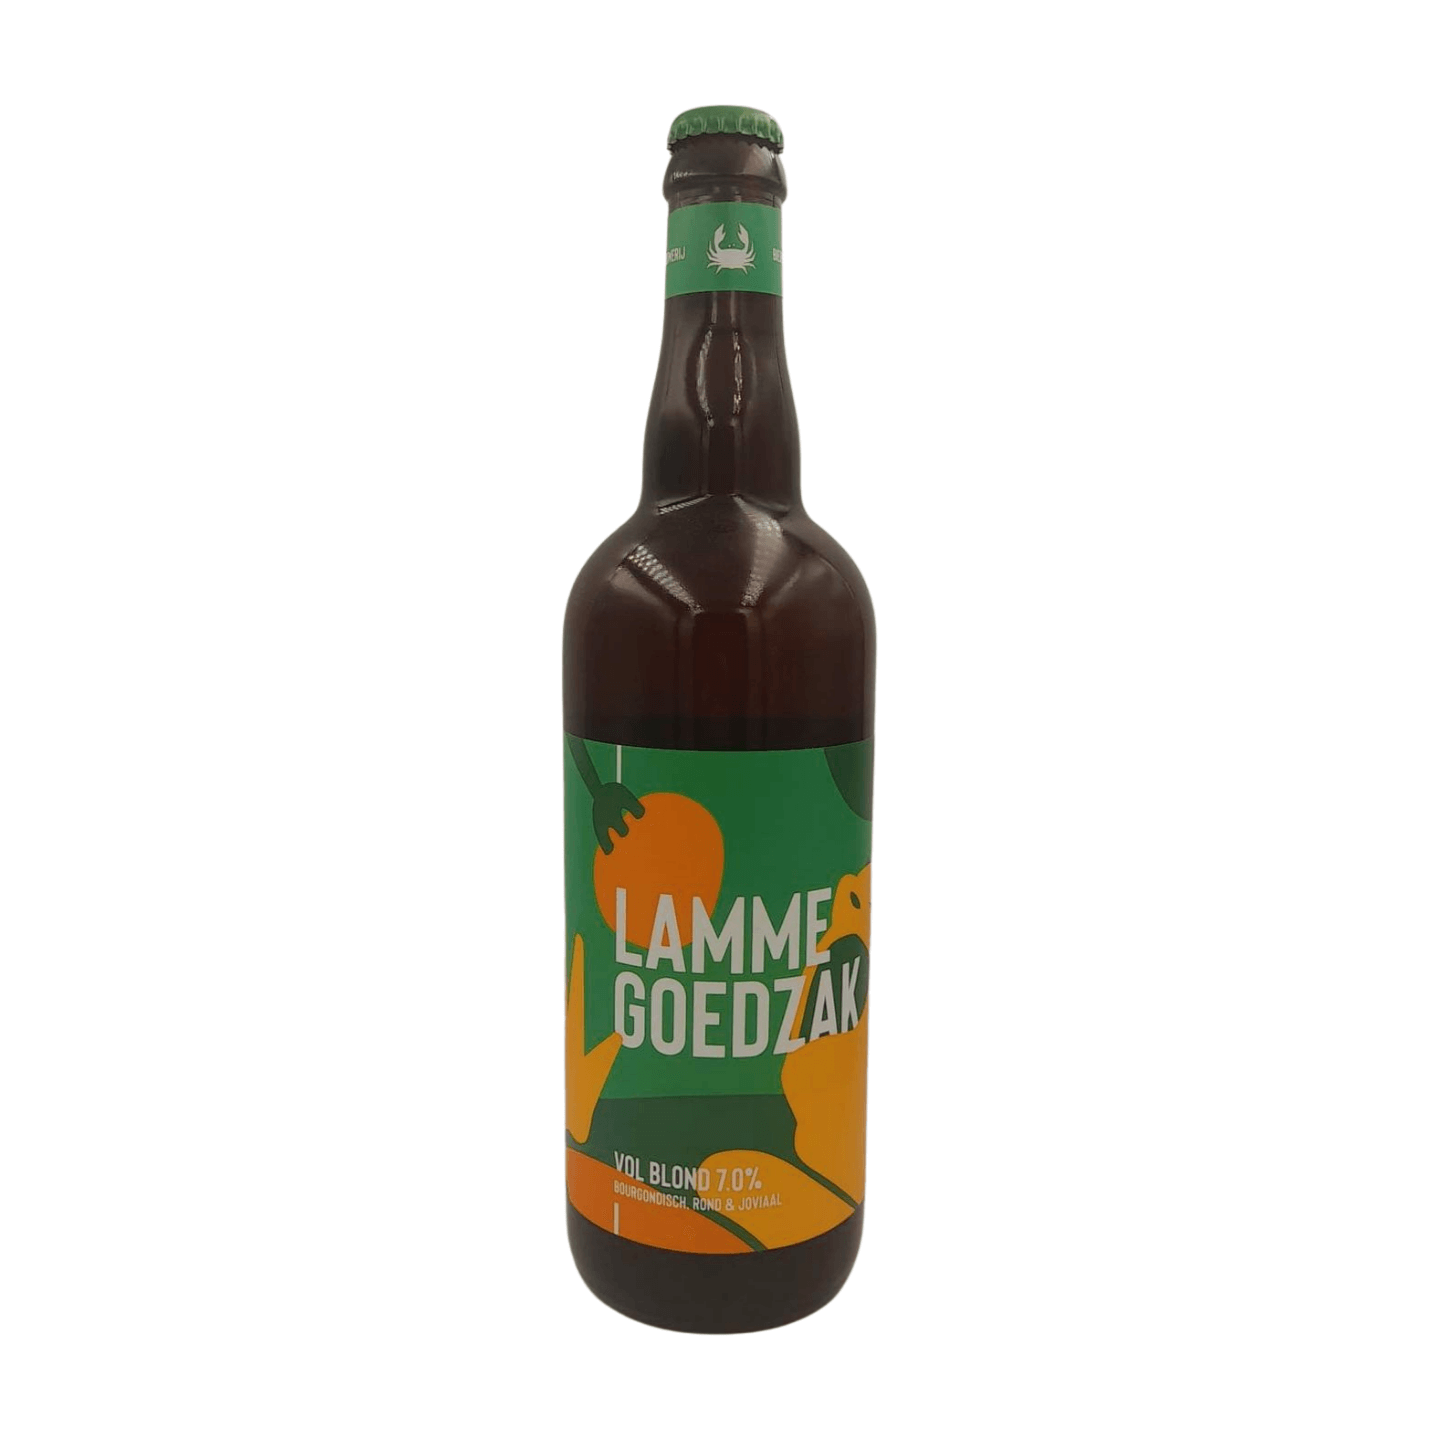 Schelde Brouwerij Lamme Goedzak 75cl | Blond Webshop Online Verdins Bierwinkel Rotterdam